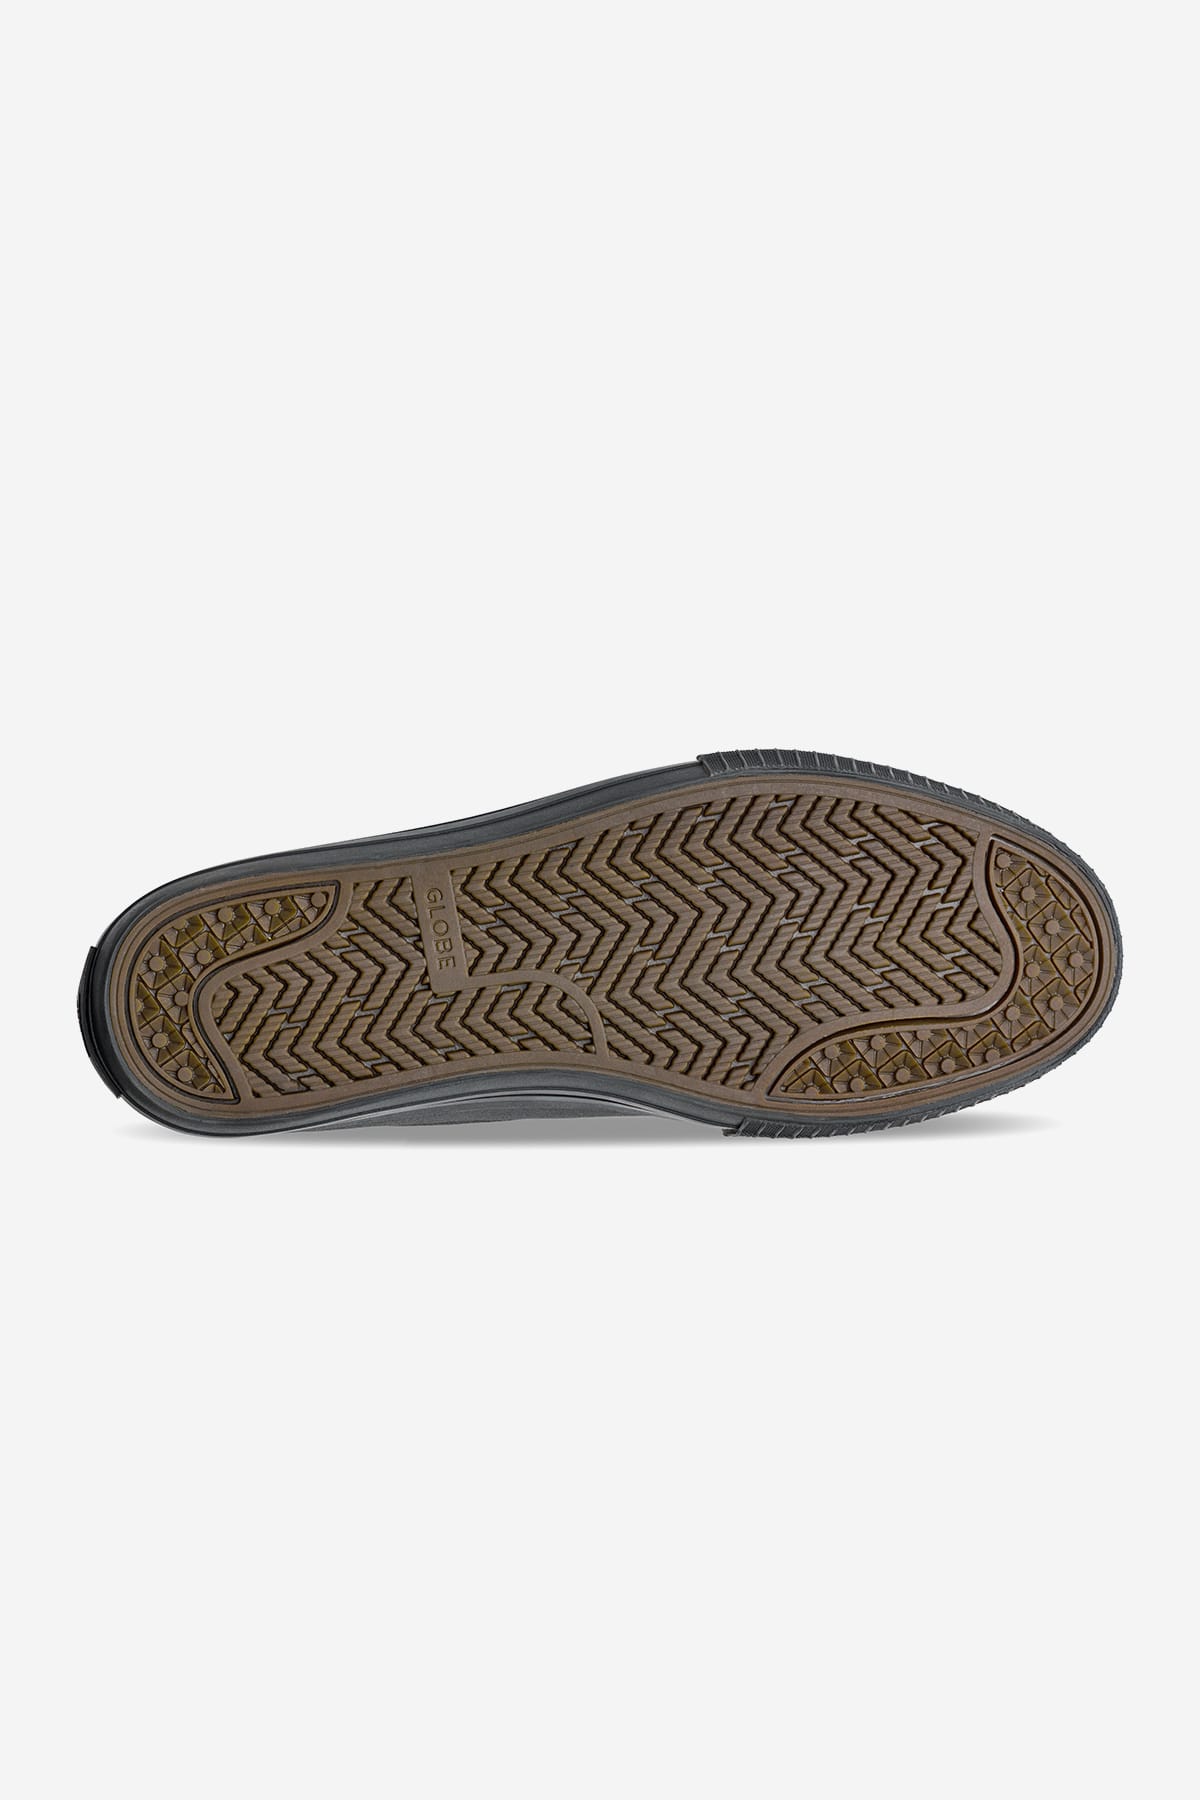 Globe - Gillette - Black/Black Gamuza - skateboard Zapatos